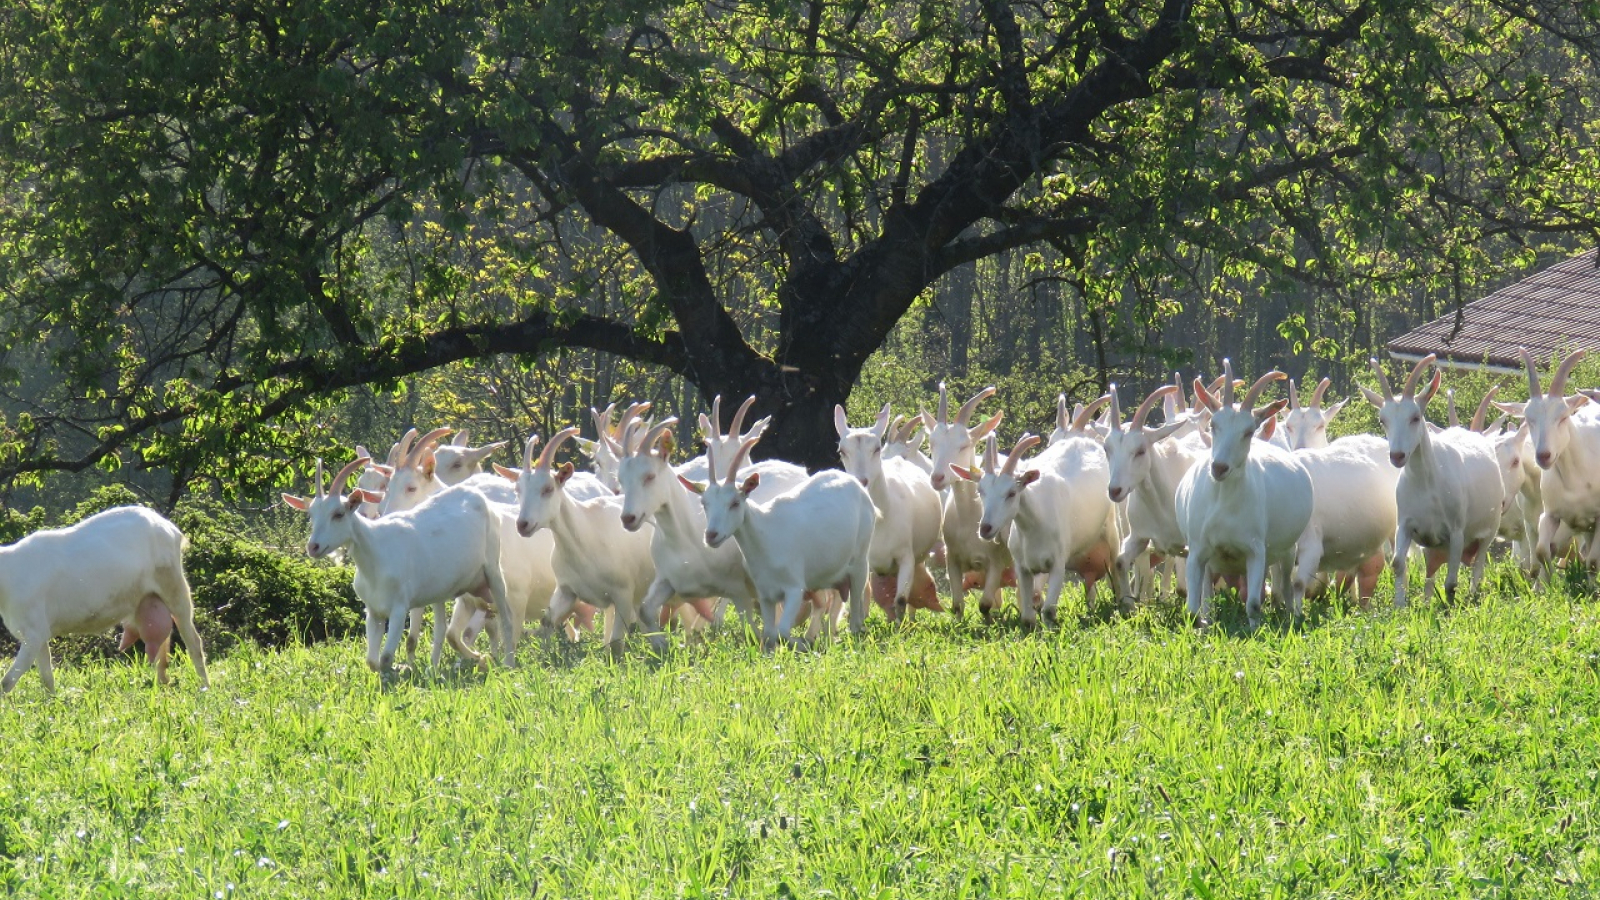 Gîte des Pampilles - Les Haies (Rhône, Pilat, proximité de Vienne et Condrieu) : troupeau de chèvres.